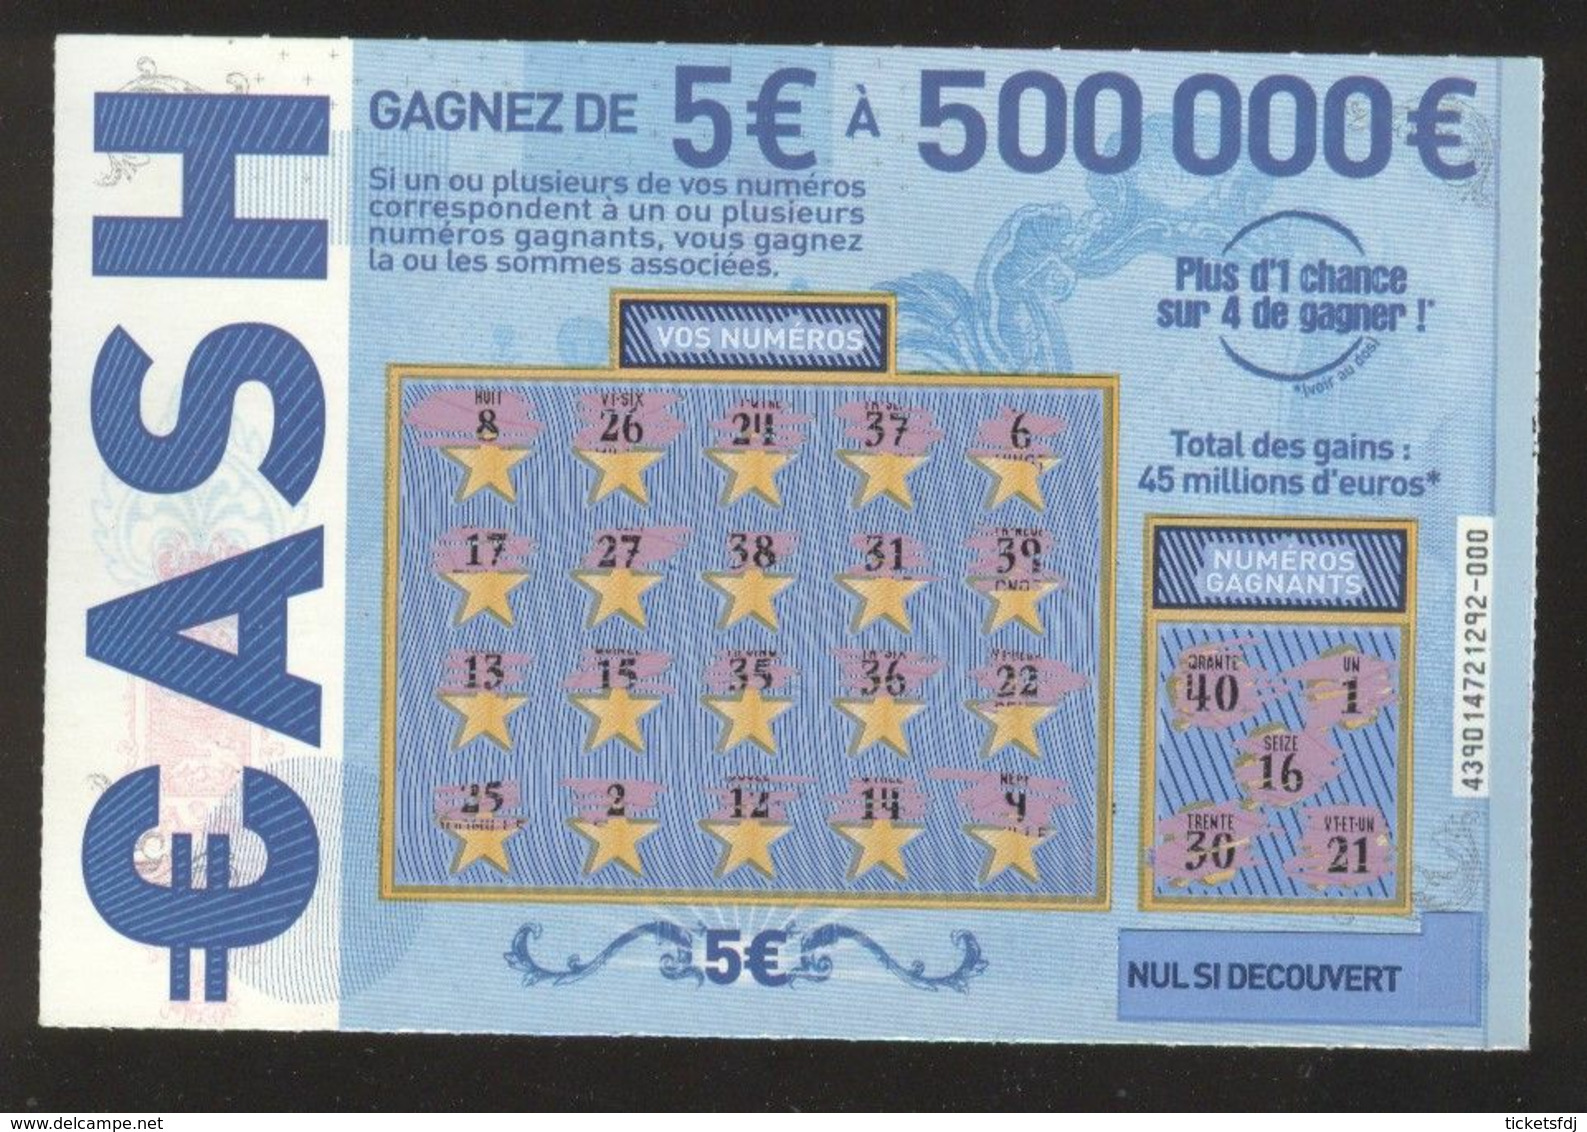 Grattage FDJ - FRANCAISE DES JEUX - CASH 43901 - Repère De Fabrication - Lottery Tickets